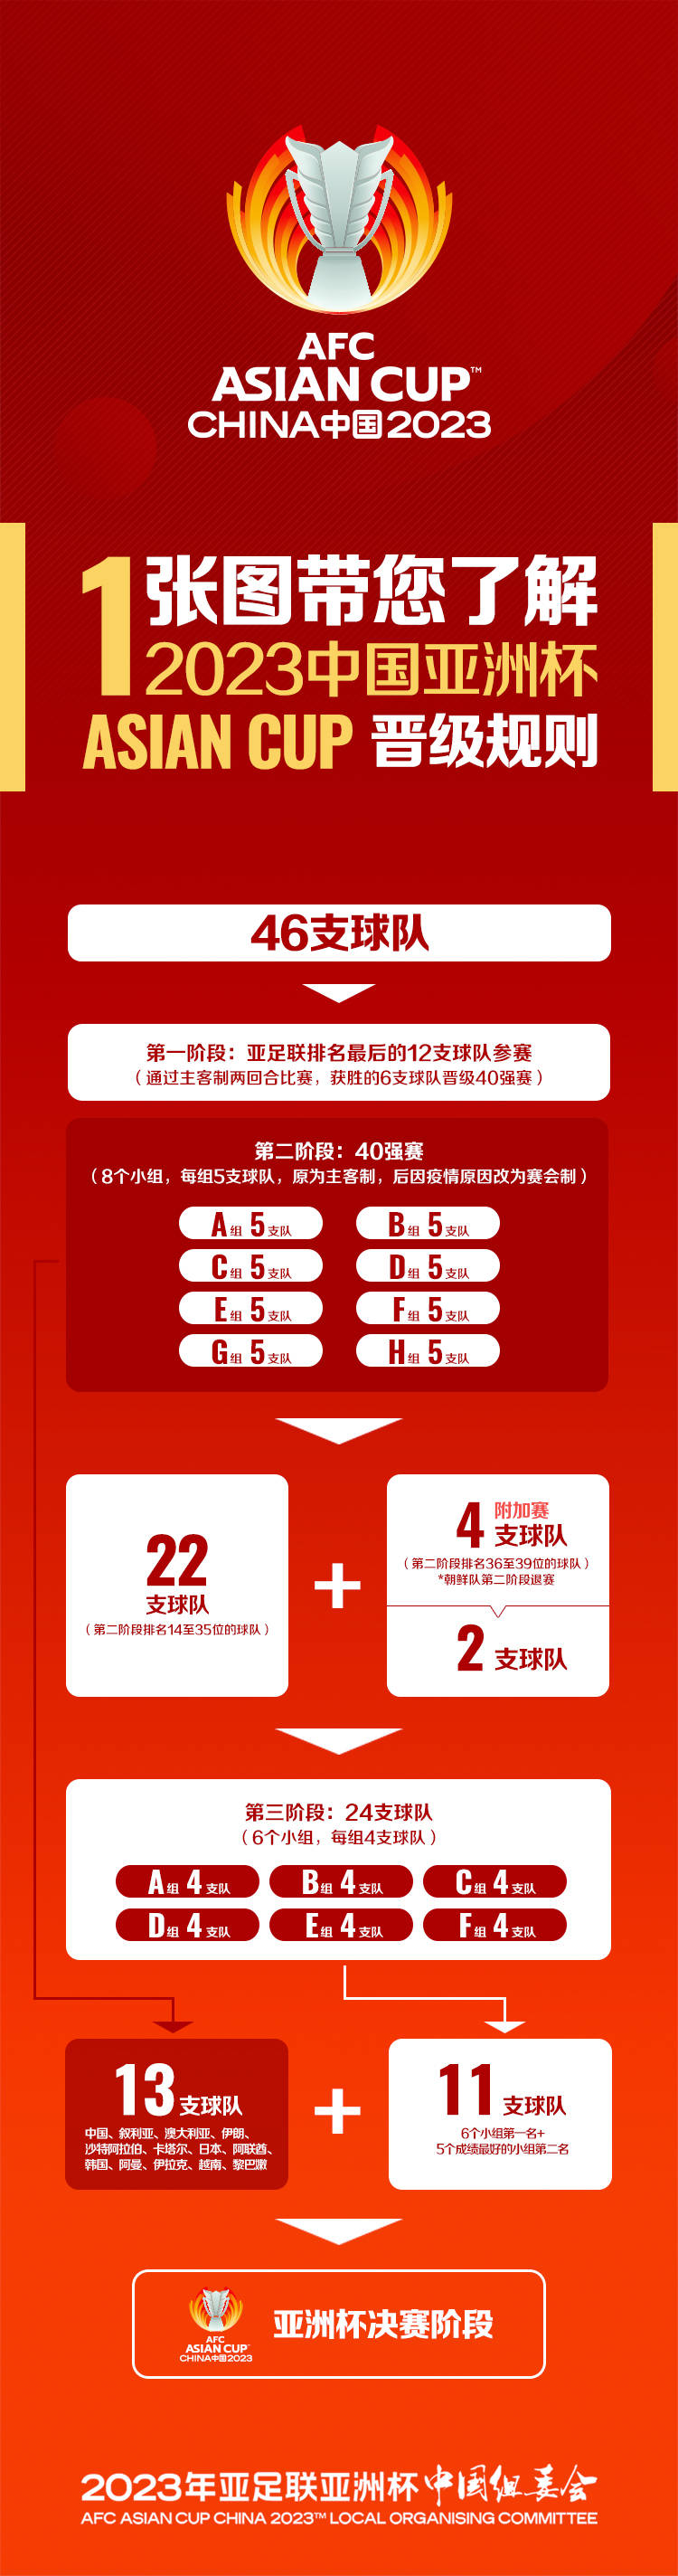 2023年亚足联中国亚洲杯预选赛最终阶段抽签结果揭晓保定疫情情况如何